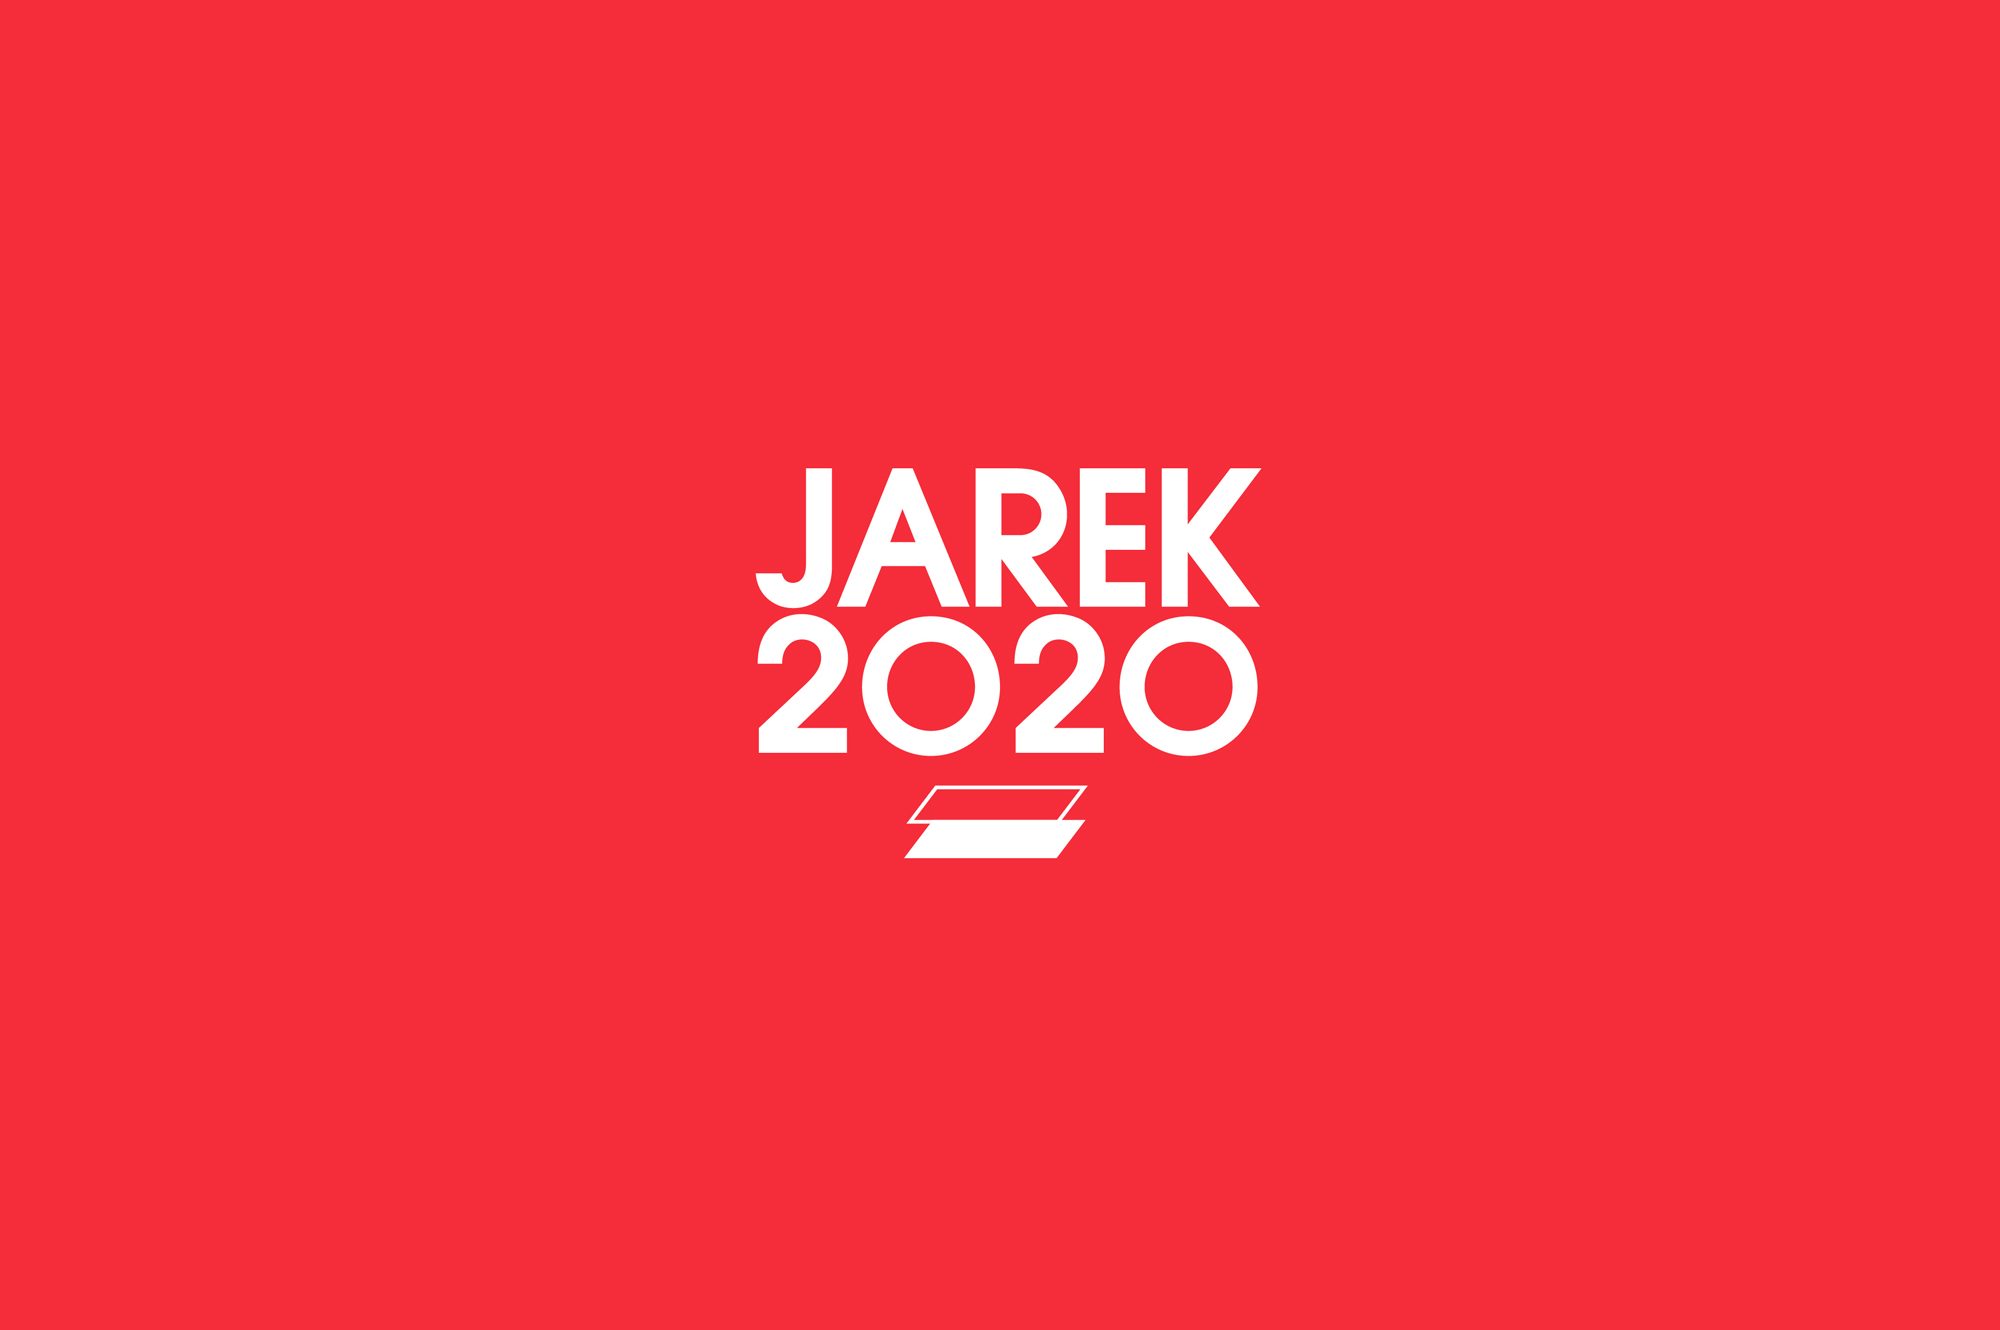 Jarek 2020